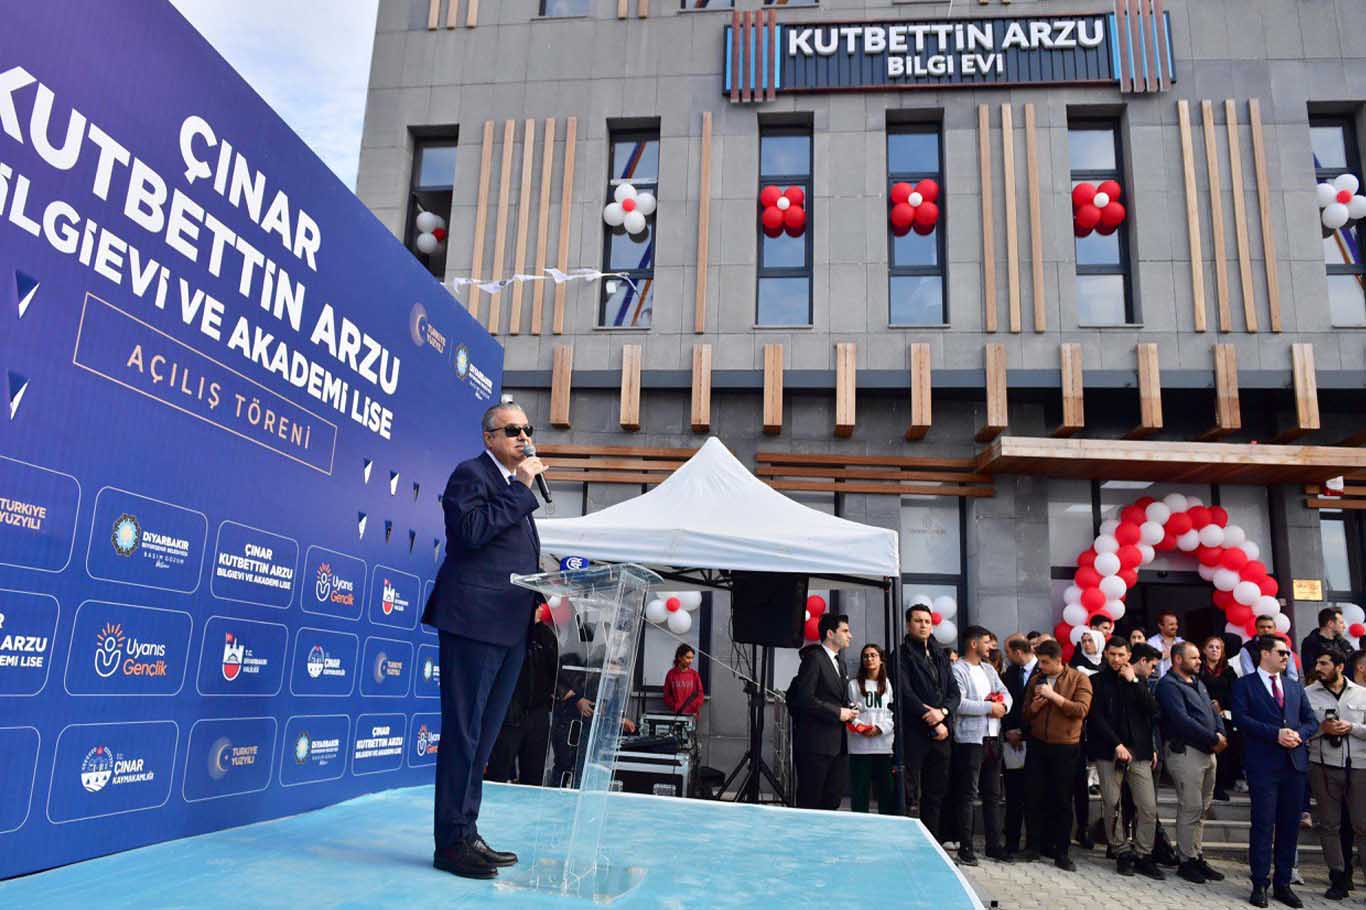 Diyarbakır’da Yeni Bilgi Evi Ve Akademi Lise Açıldı 3